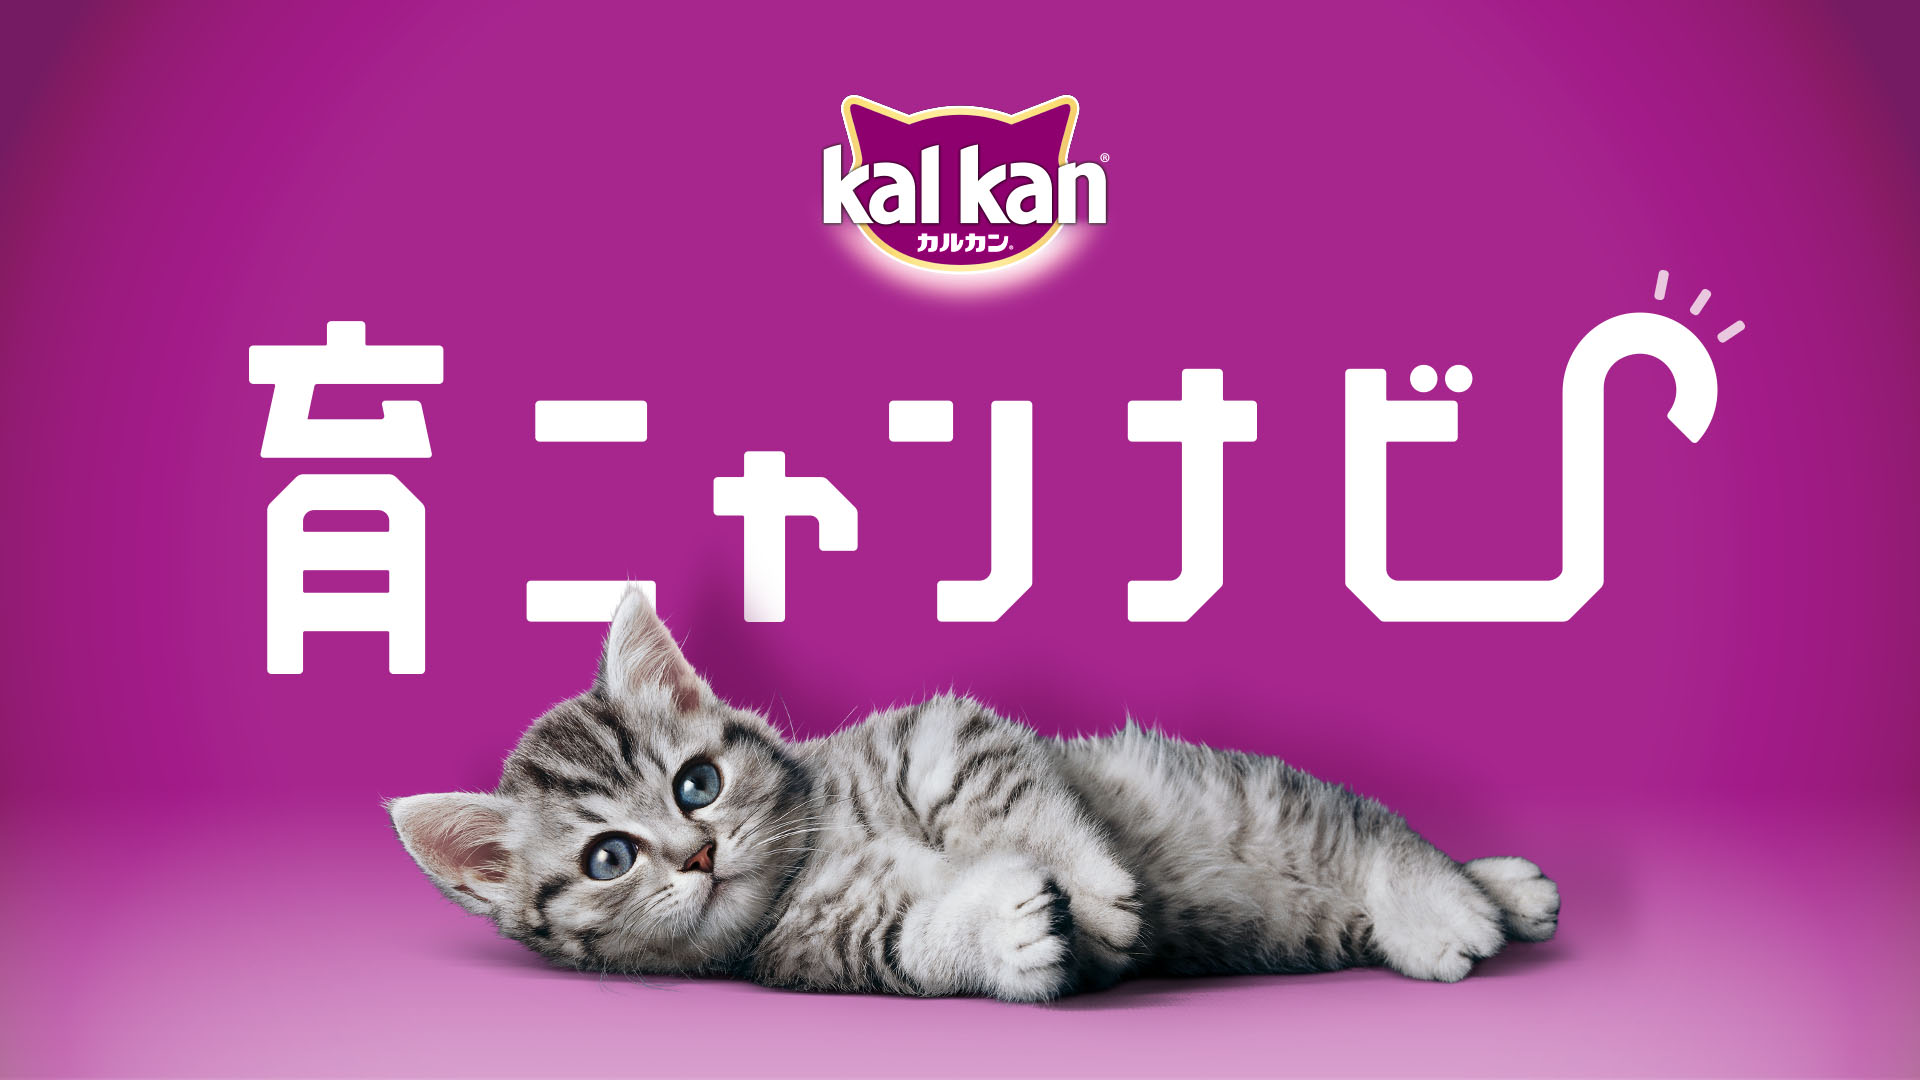 カルカン®が初めて子猫を飼い始める「子猫育てビギナー」を応援！「子猫育て」を音声でサポートするアプリ「育ニャンナビ」リリース